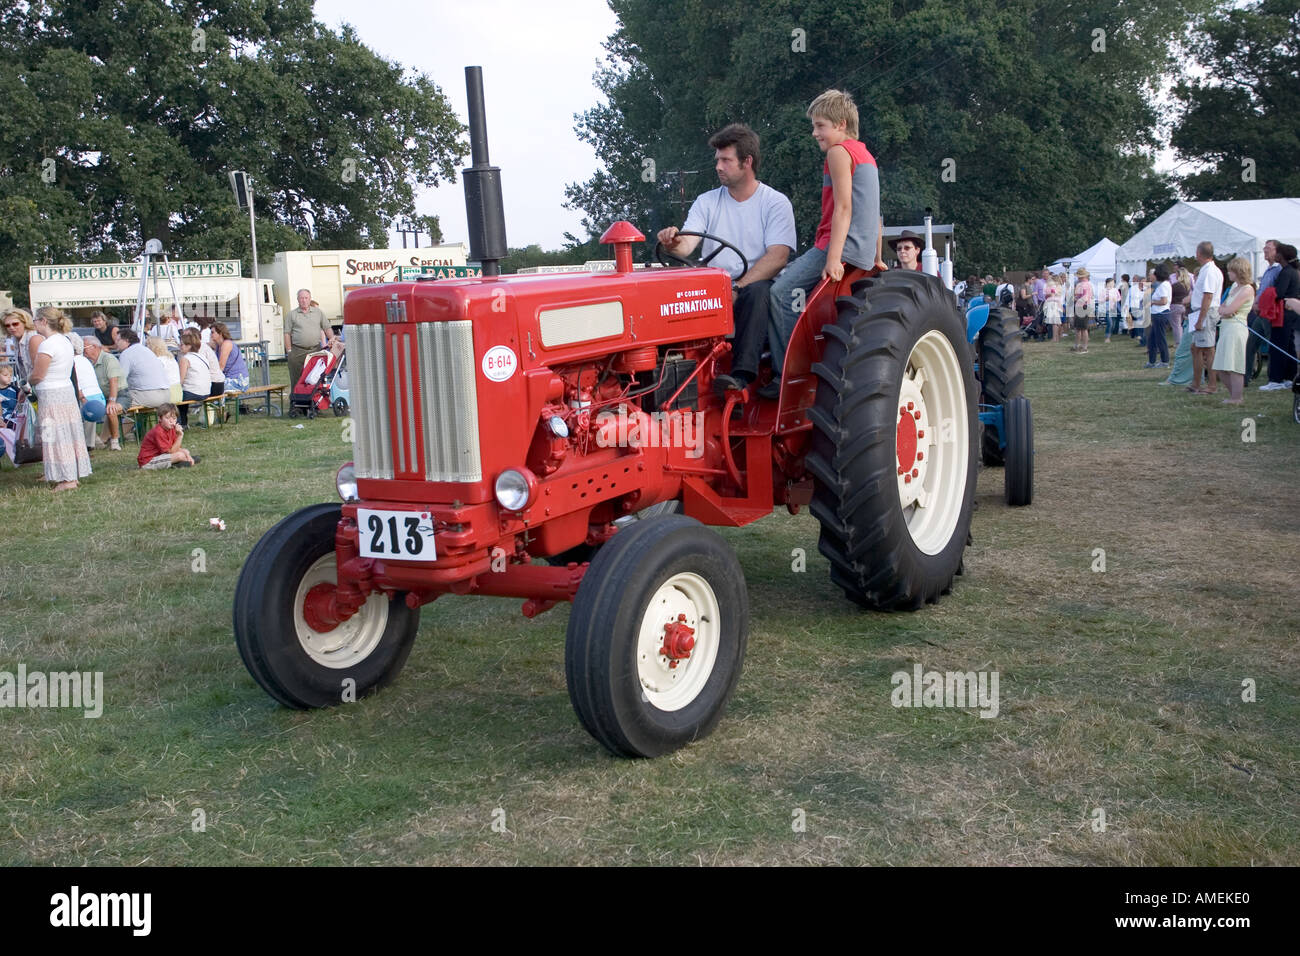 B 614 ancien vintage tracteur à Moreton in Marsh comice agricole Septembre 2005 UK Cotswolds Banque D'Images